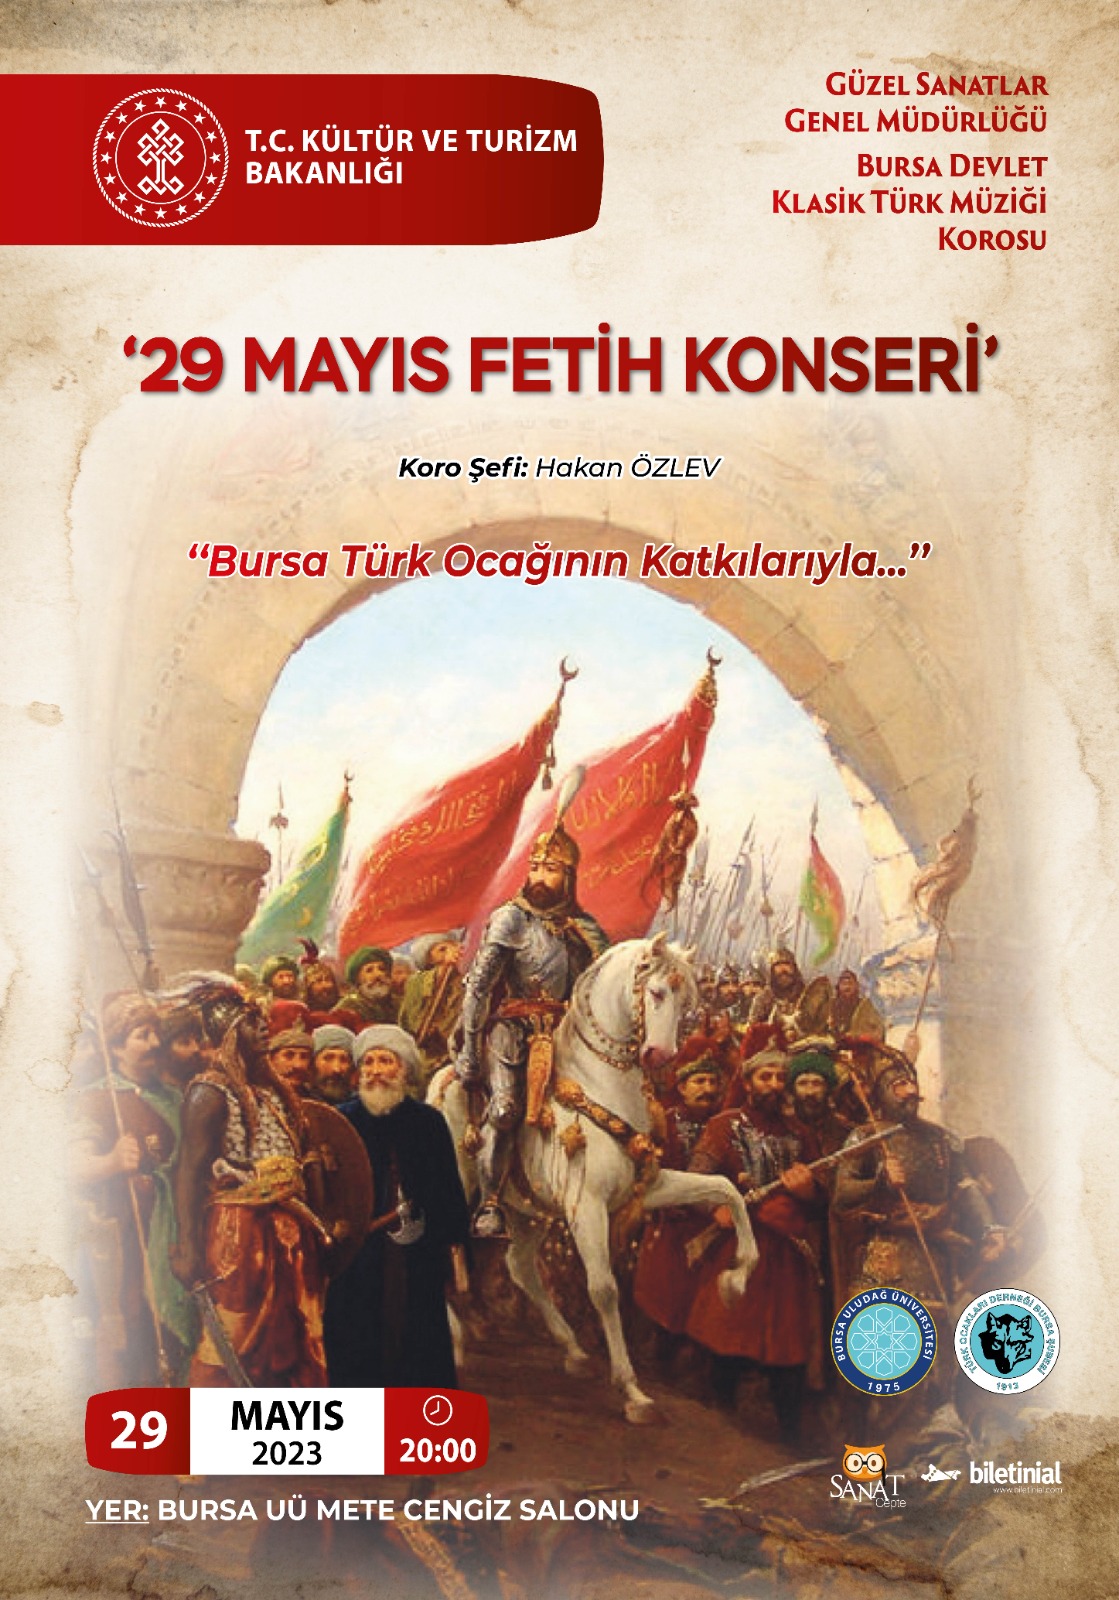 29 Mayıs Fetih Konseri - Bursa Devlet Klasik Türk Müziği Korosu